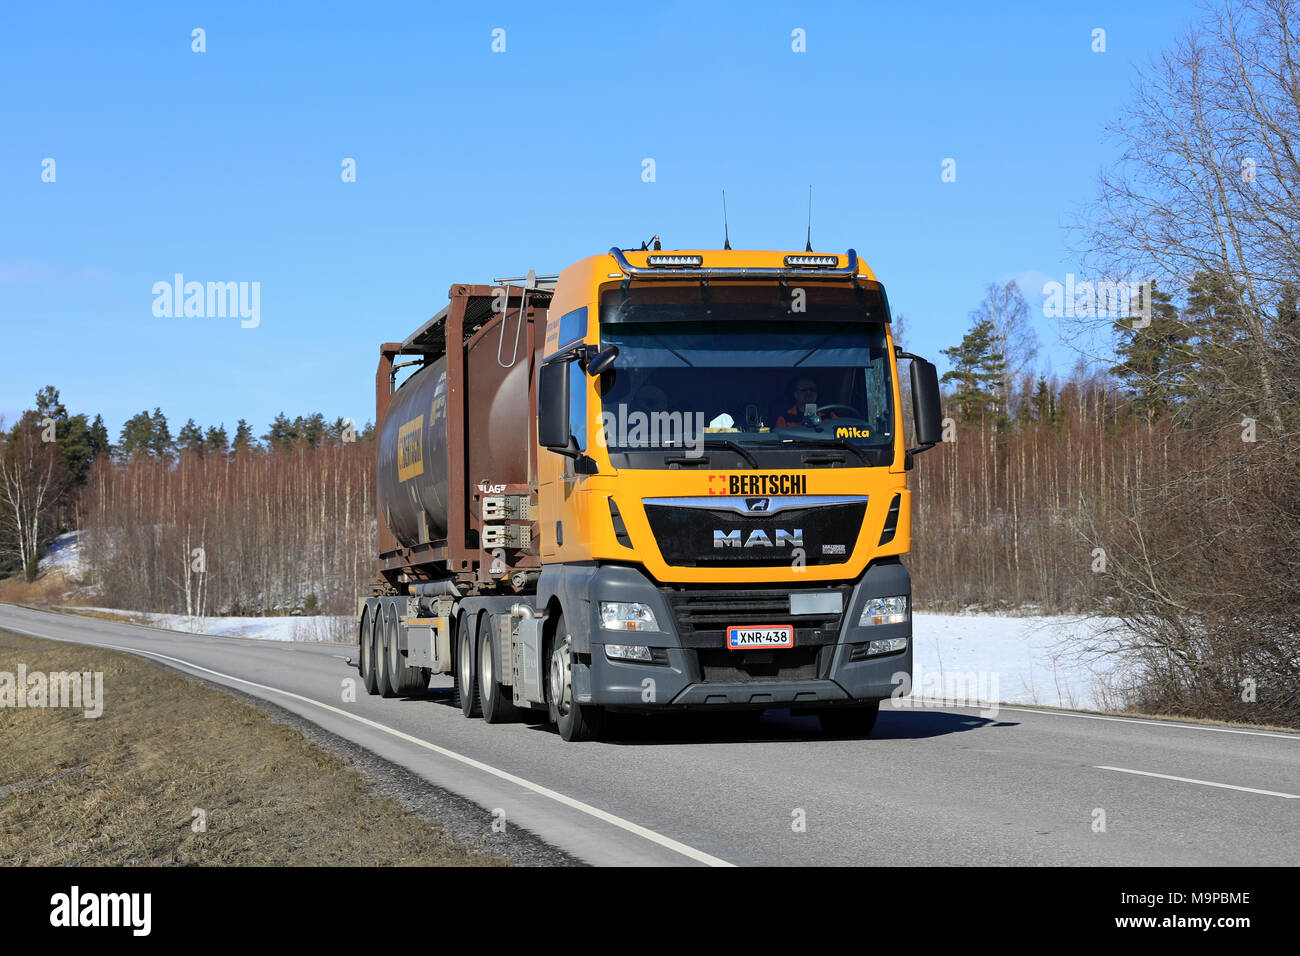 SALO, Finnland - 23. MÄRZ 2018: Gelbe Mann Semi Truck für Bertschi Finland Oy hols Tank Container entlang der Landstraße an einem schönen Frühlingstag. Stockfoto